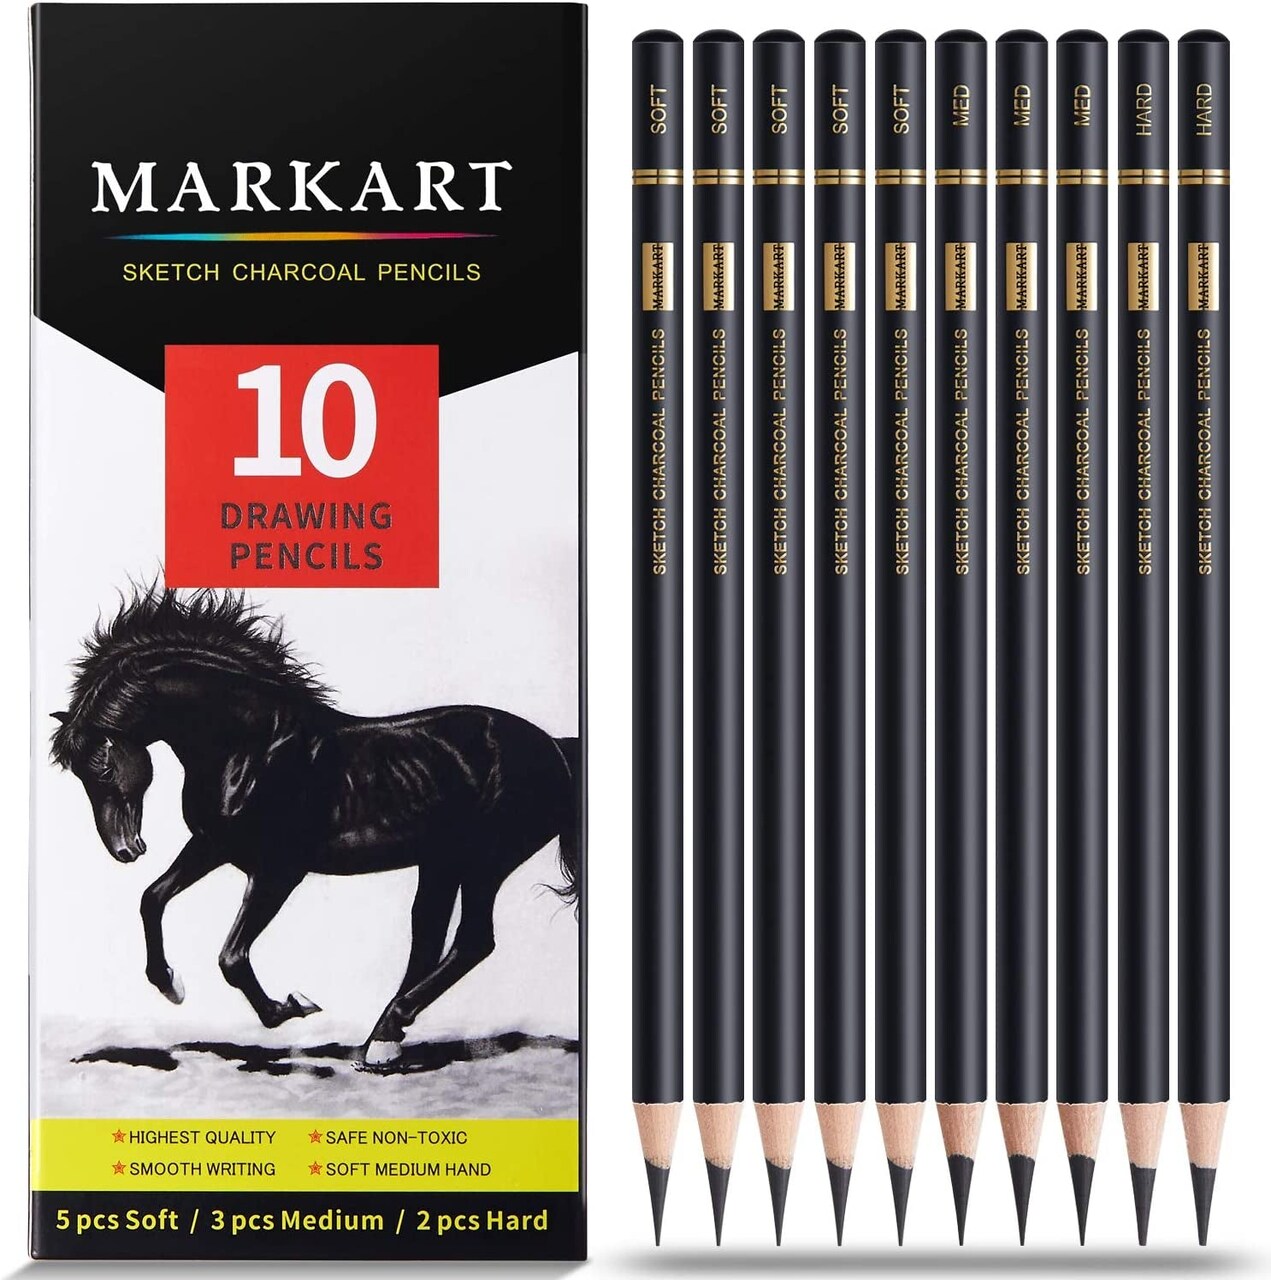 Professional Charcoal Pencils Drawing Set - 10 Pieces Soft Medium